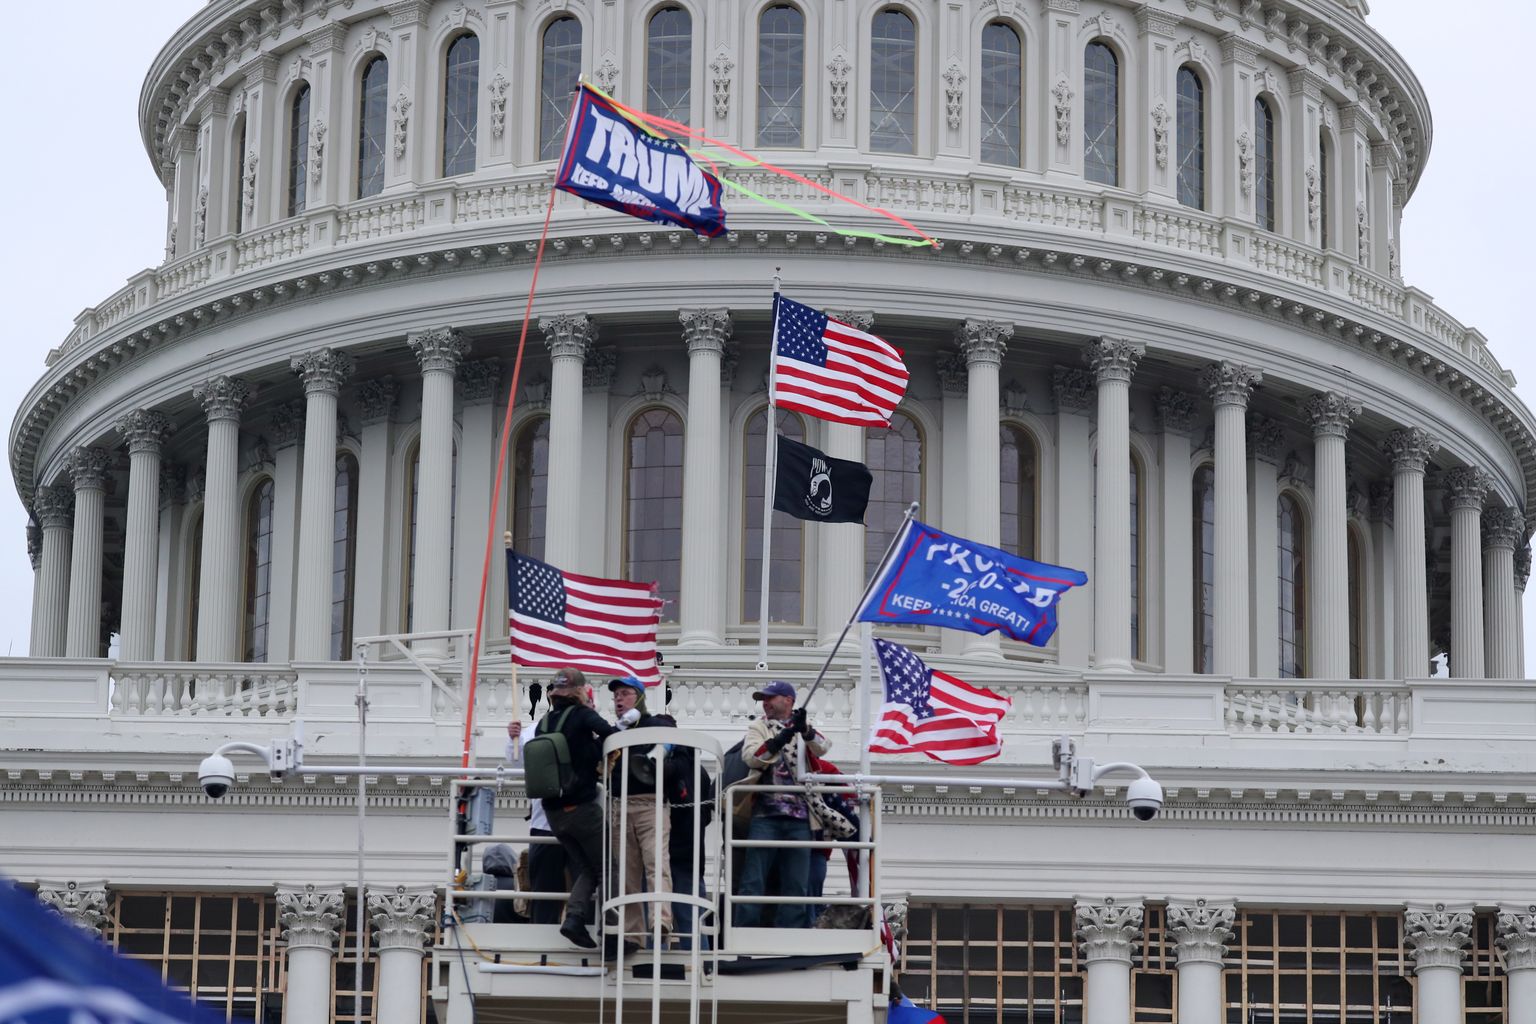 Vairāki simti toreizējā ASV prezidenta Donalda Trampa atbalstītāju 6.janvārī Vašingtonā iebruka Kapitolijā, kad tur bija sapulcējies Kongress, lai oficiāli apstiprinātu demokrāta Džo Baidena uzvaru prezidenta vēlēšanās.